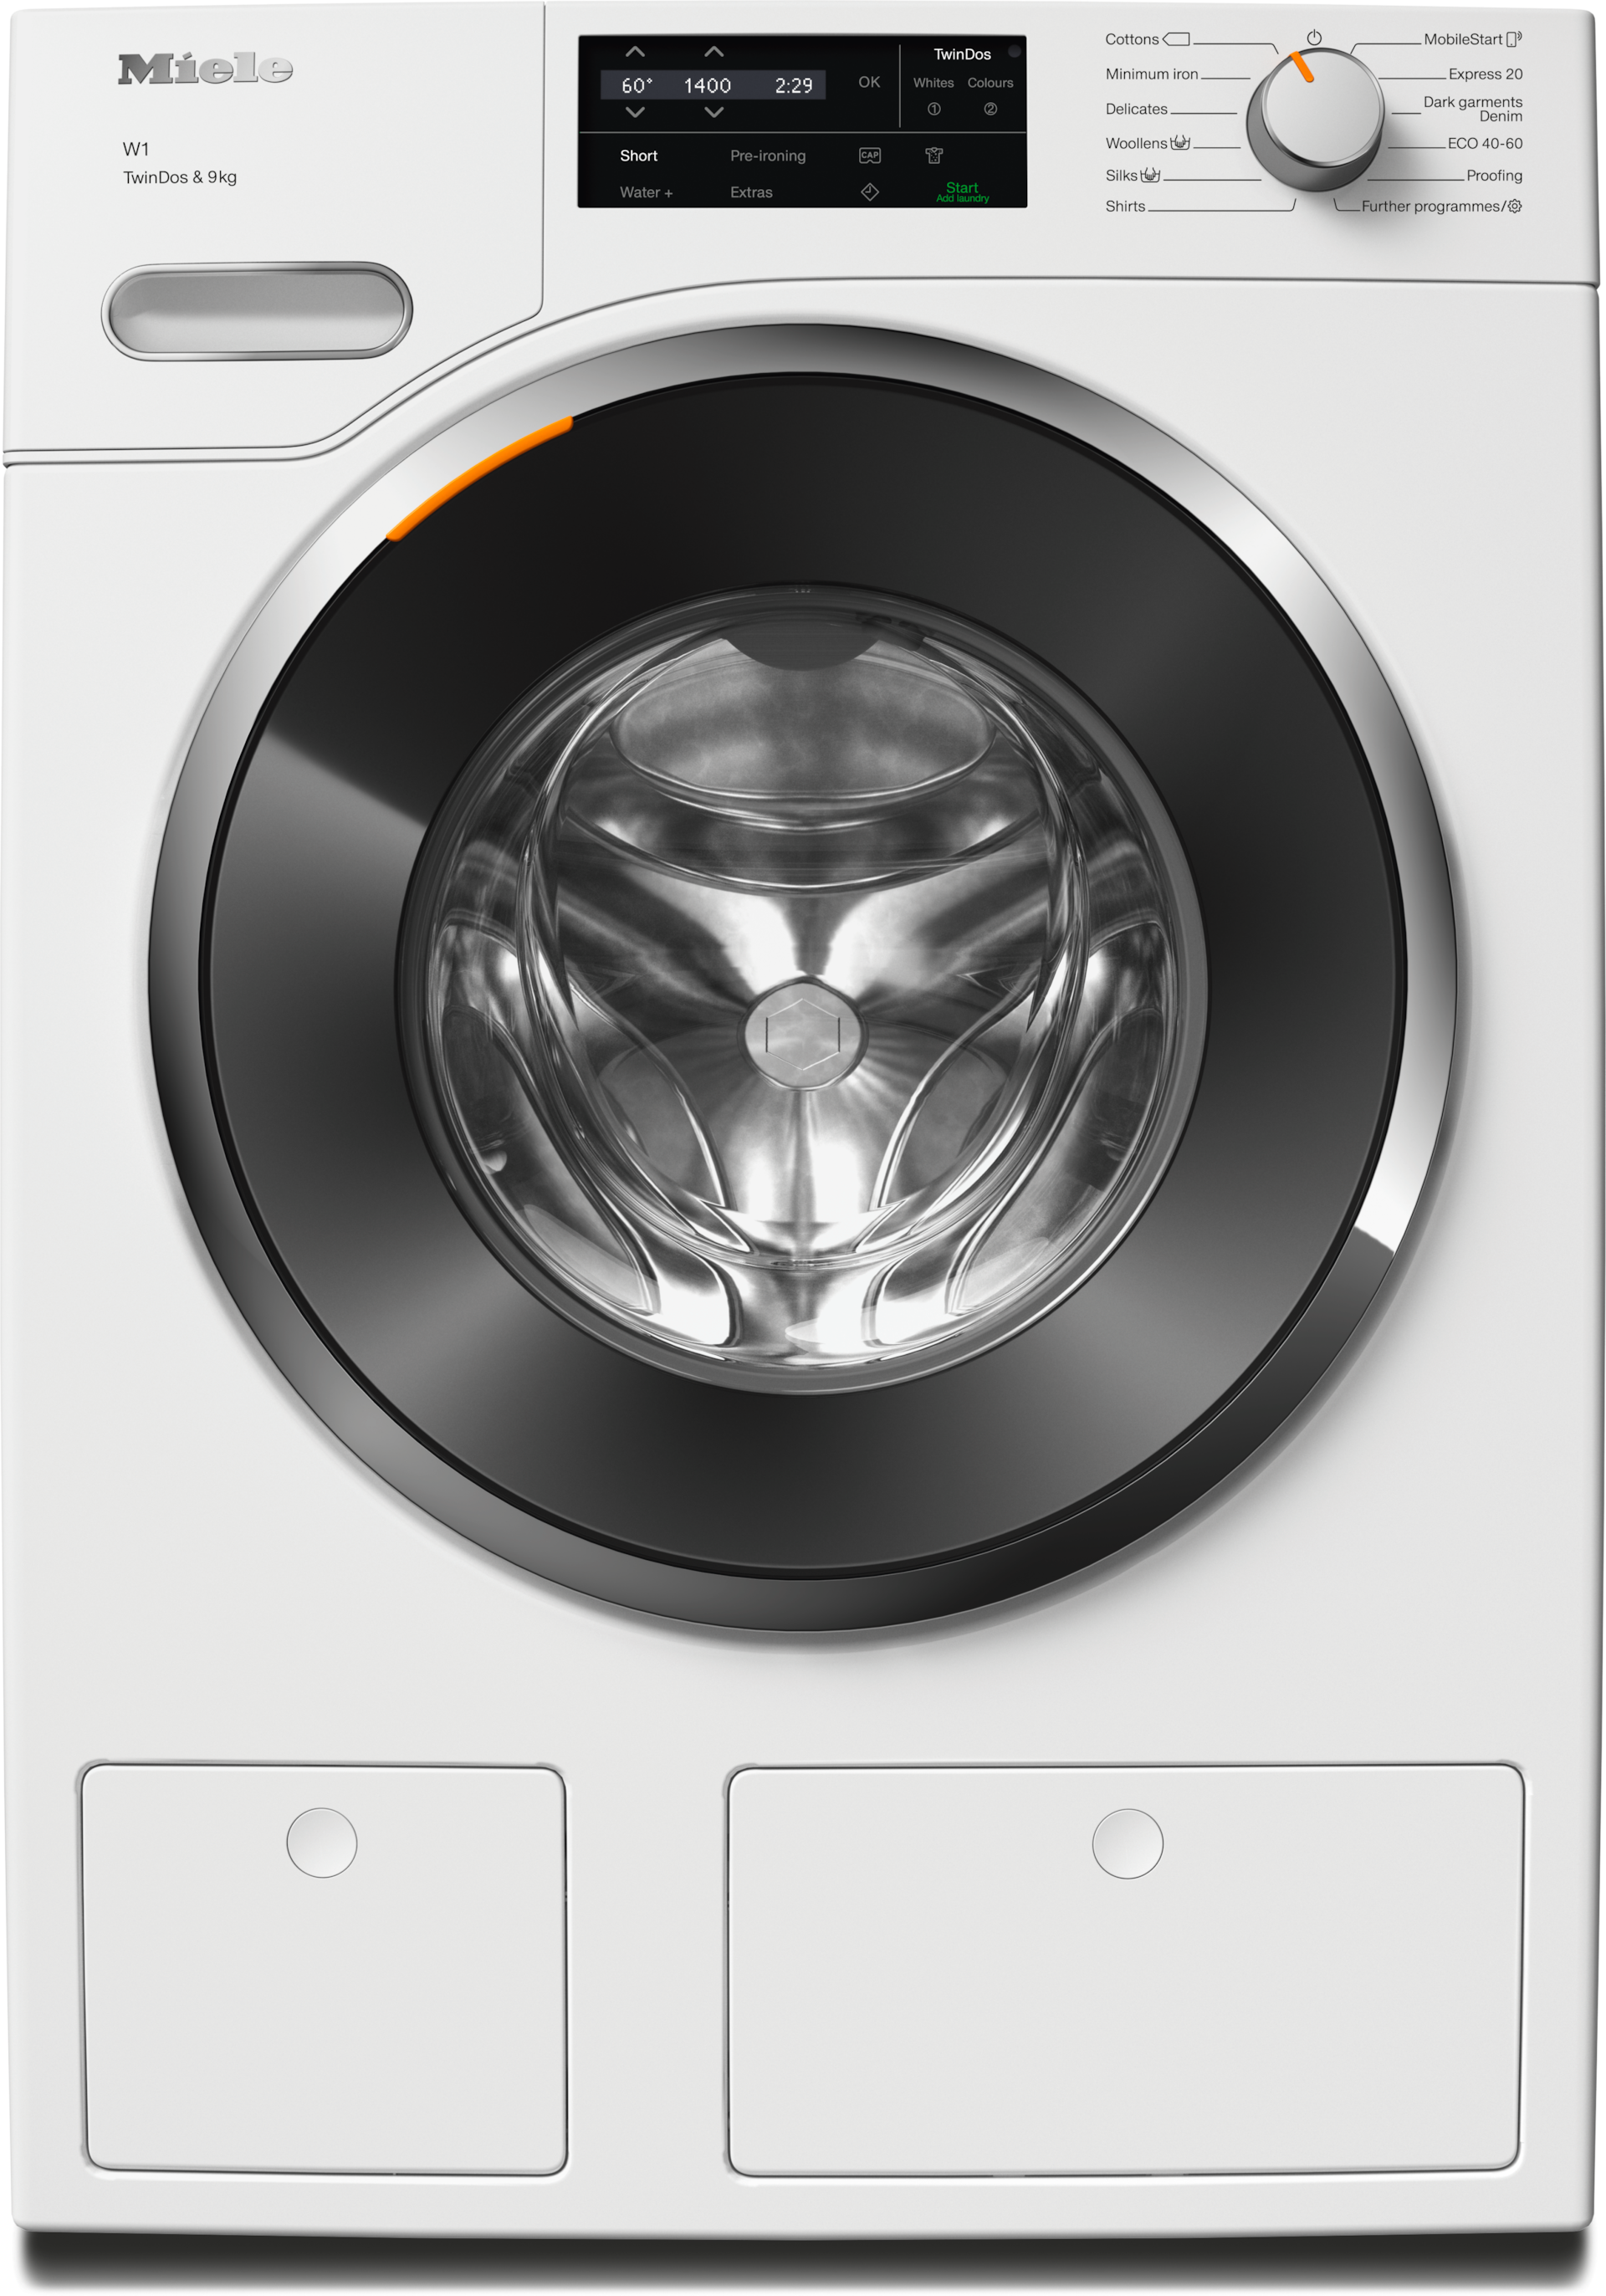 Washing machines - WWG660 WCS TDos&9kg Lotus white - 1